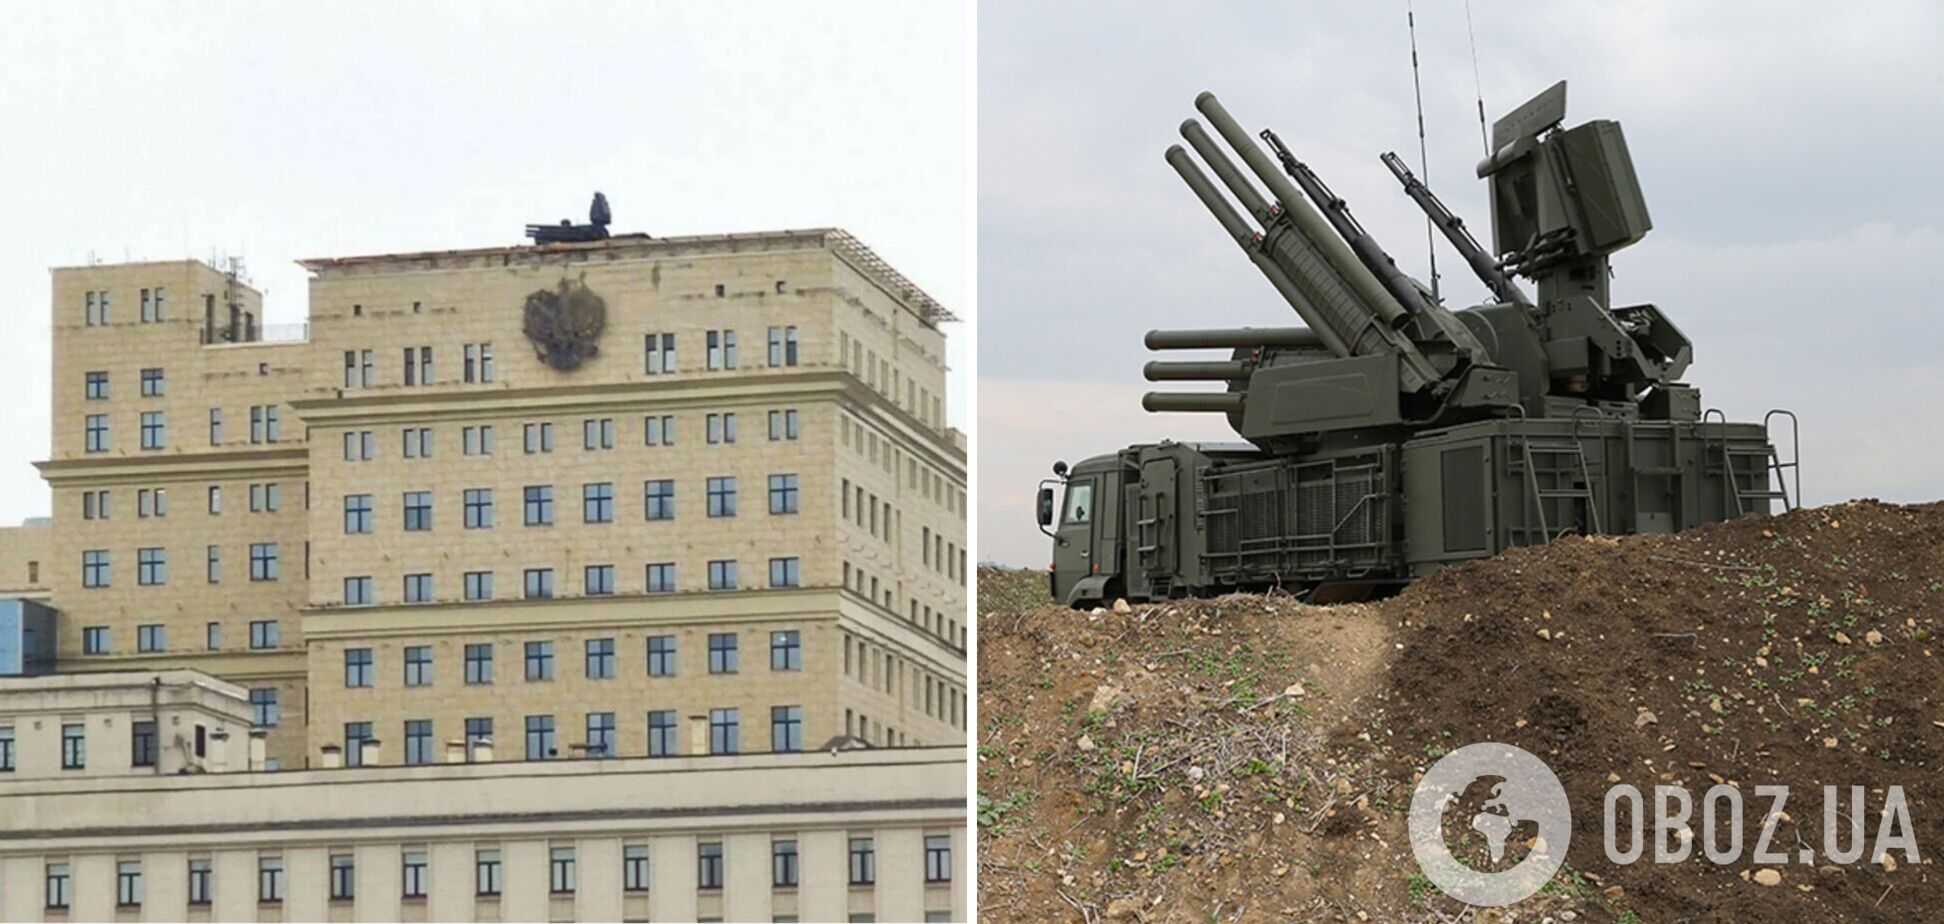 Ніякого куполу над Москвою немає: військовий експерт пояснив 'ефект' від 'Панцирів' на дахах будівель. Відео